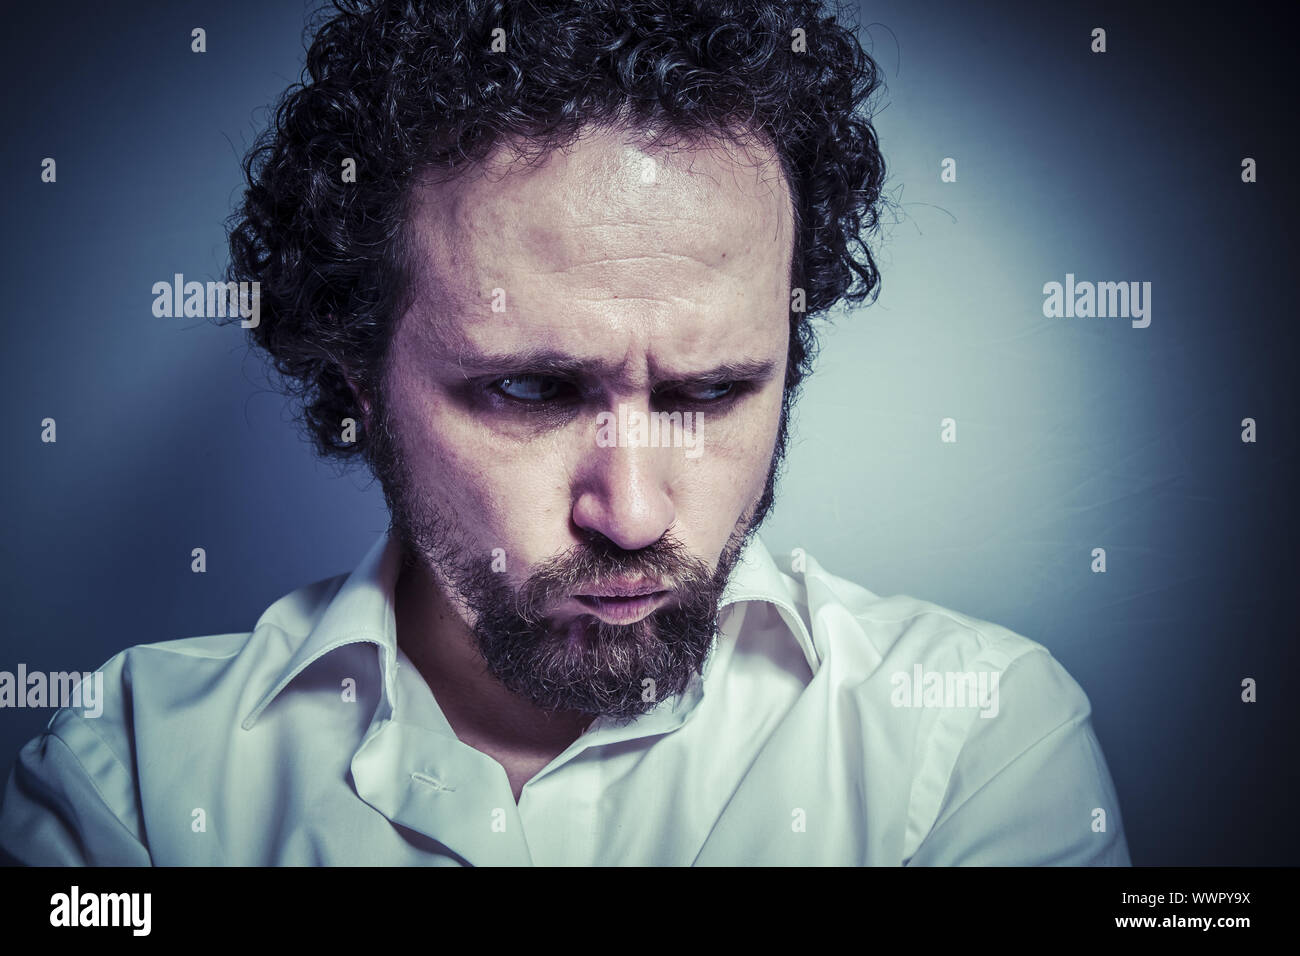 trauriges Gesicht, Mann mit intensiven Ausdruck, weißes Hemd Stockfoto